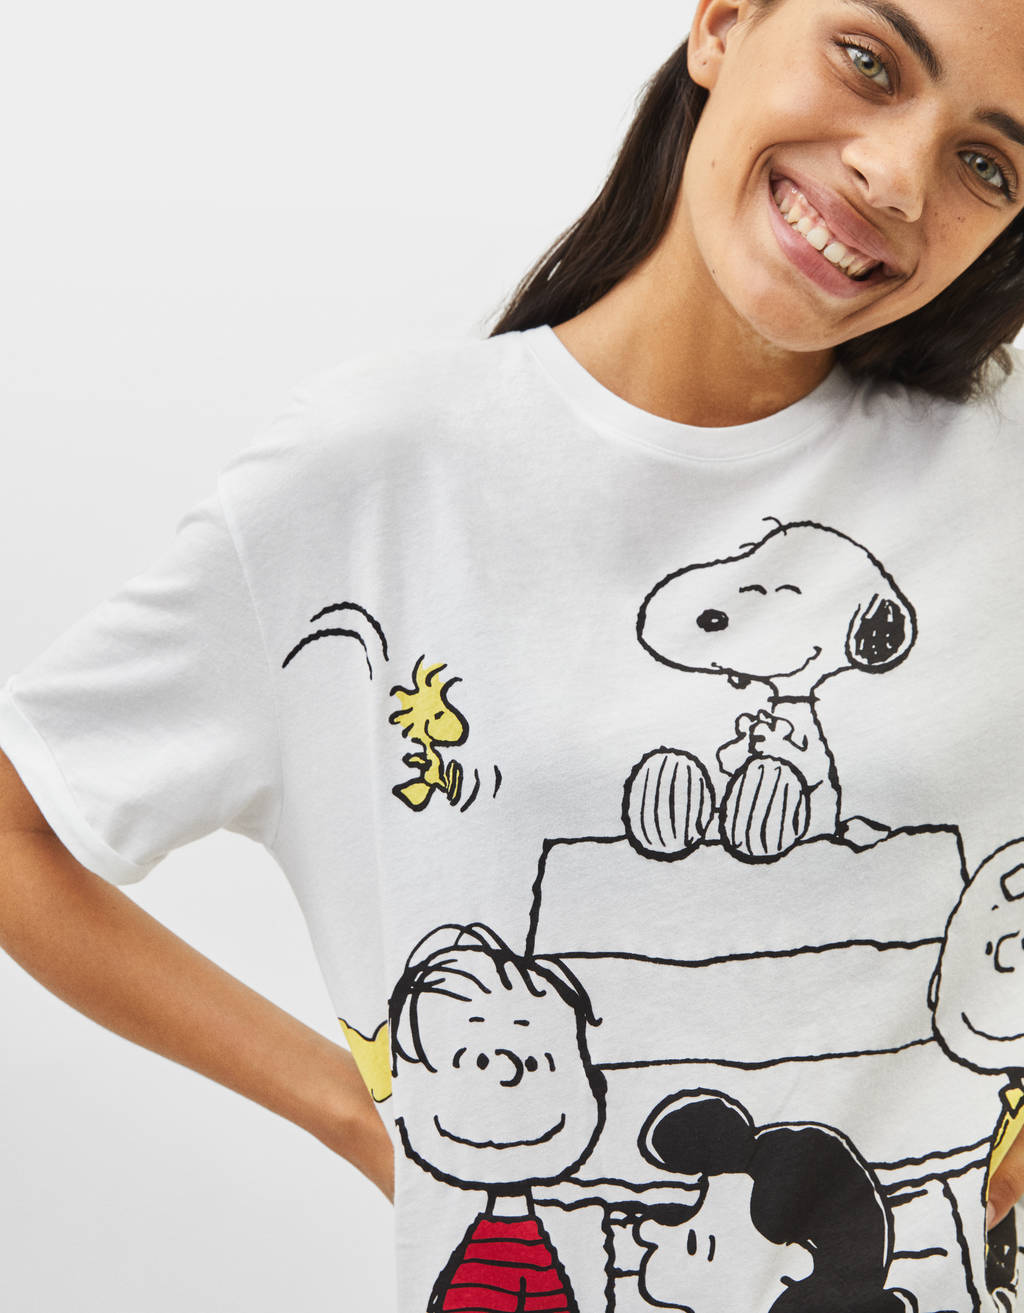 Bershka lanza una colección limitada protagonizada por Snoopy